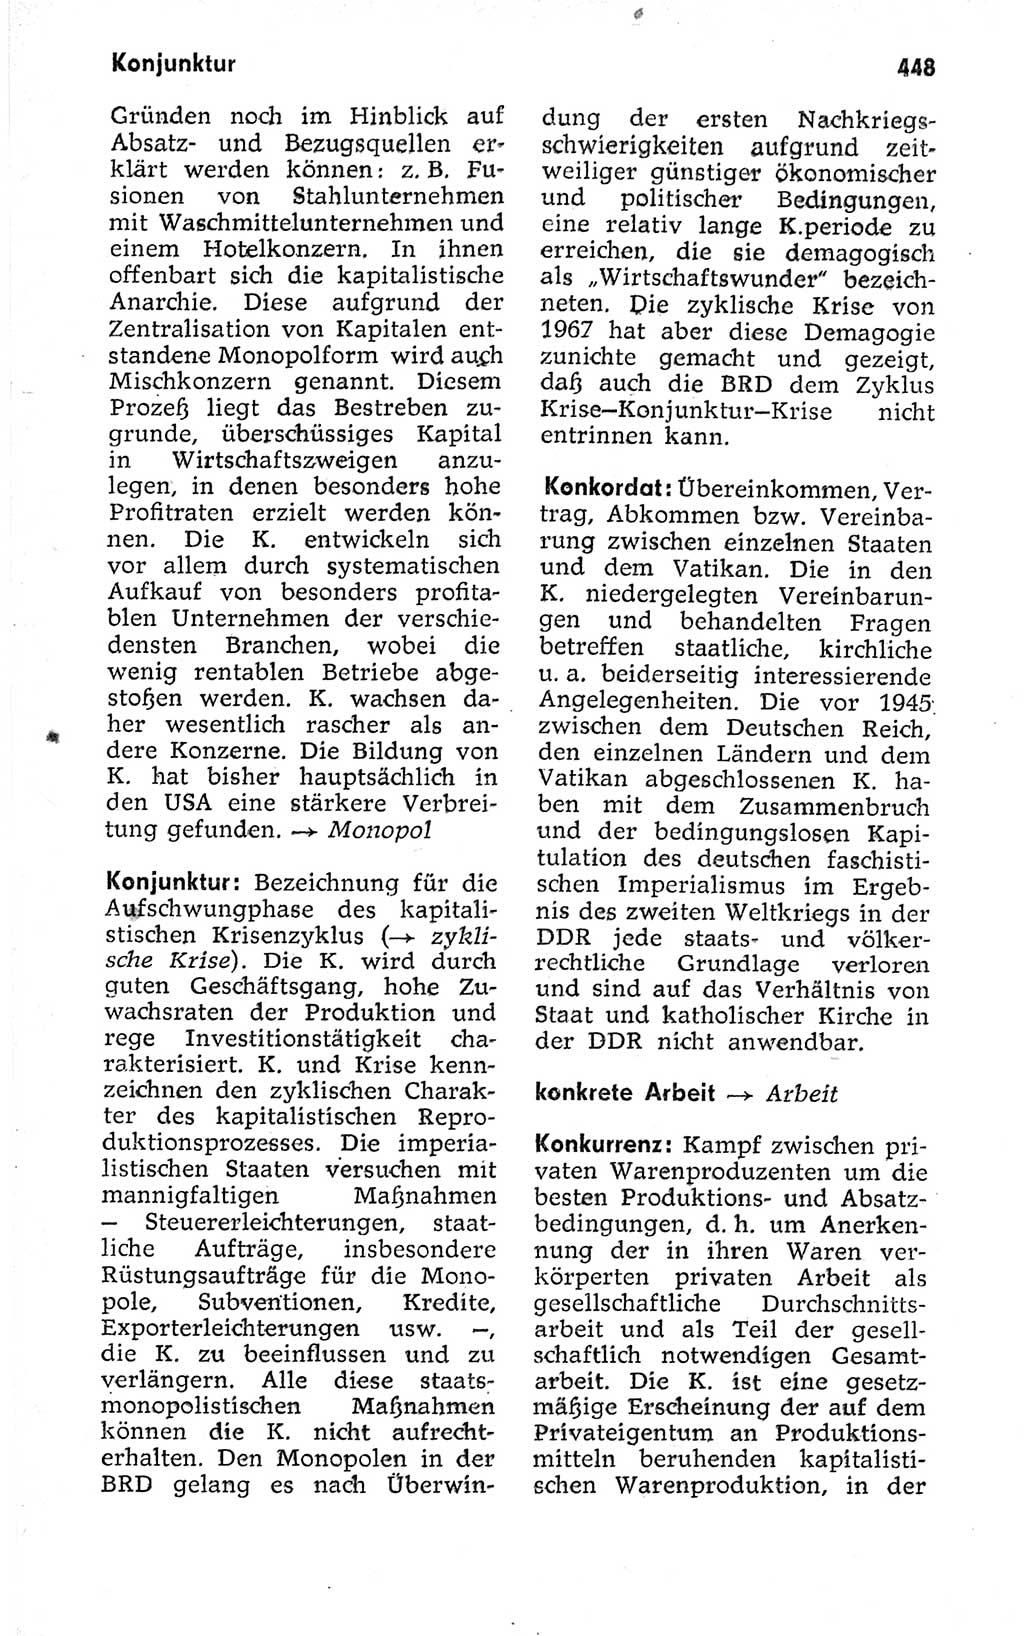 Kleines politisches Wörterbuch [Deutsche Demokratische Republik (DDR)] 1973, Seite 448 (Kl. pol. Wb. DDR 1973, S. 448)